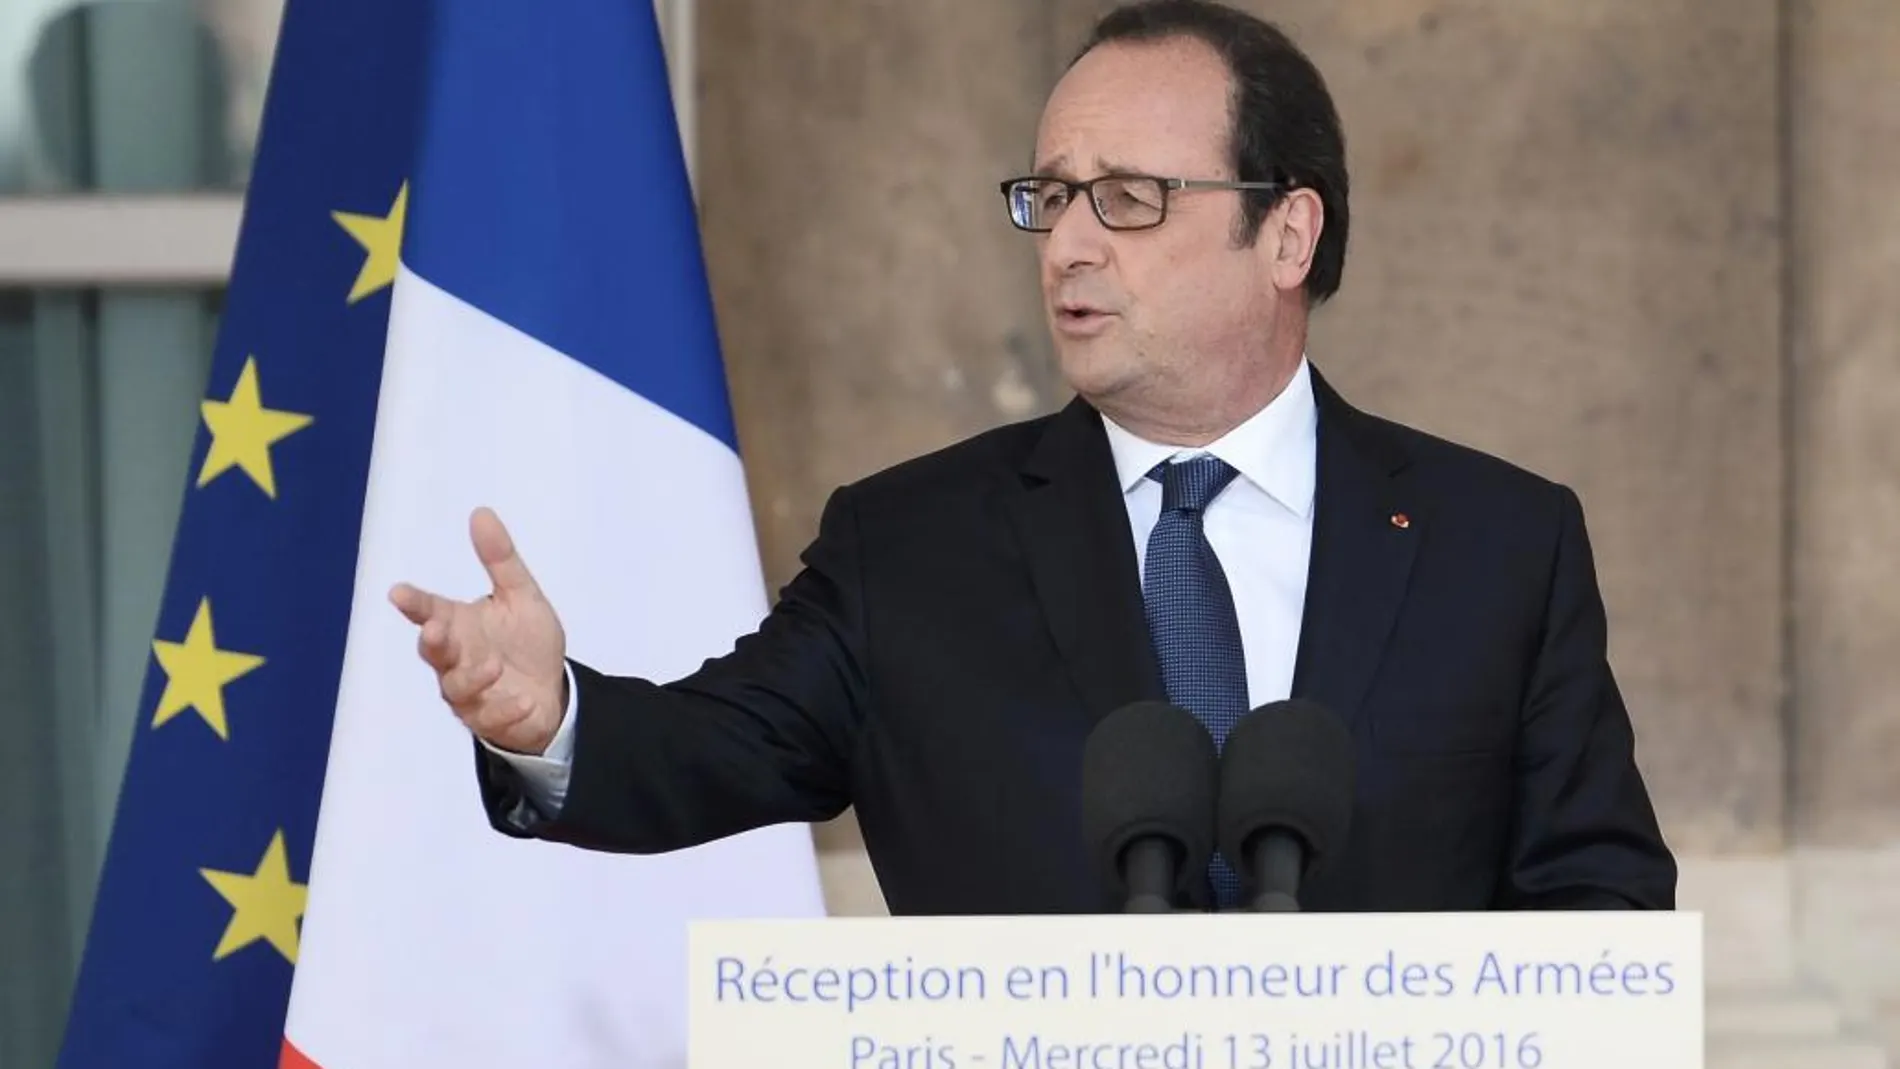 El presidente francés en un discurso durante una recepción en el Ministerio de Defensa